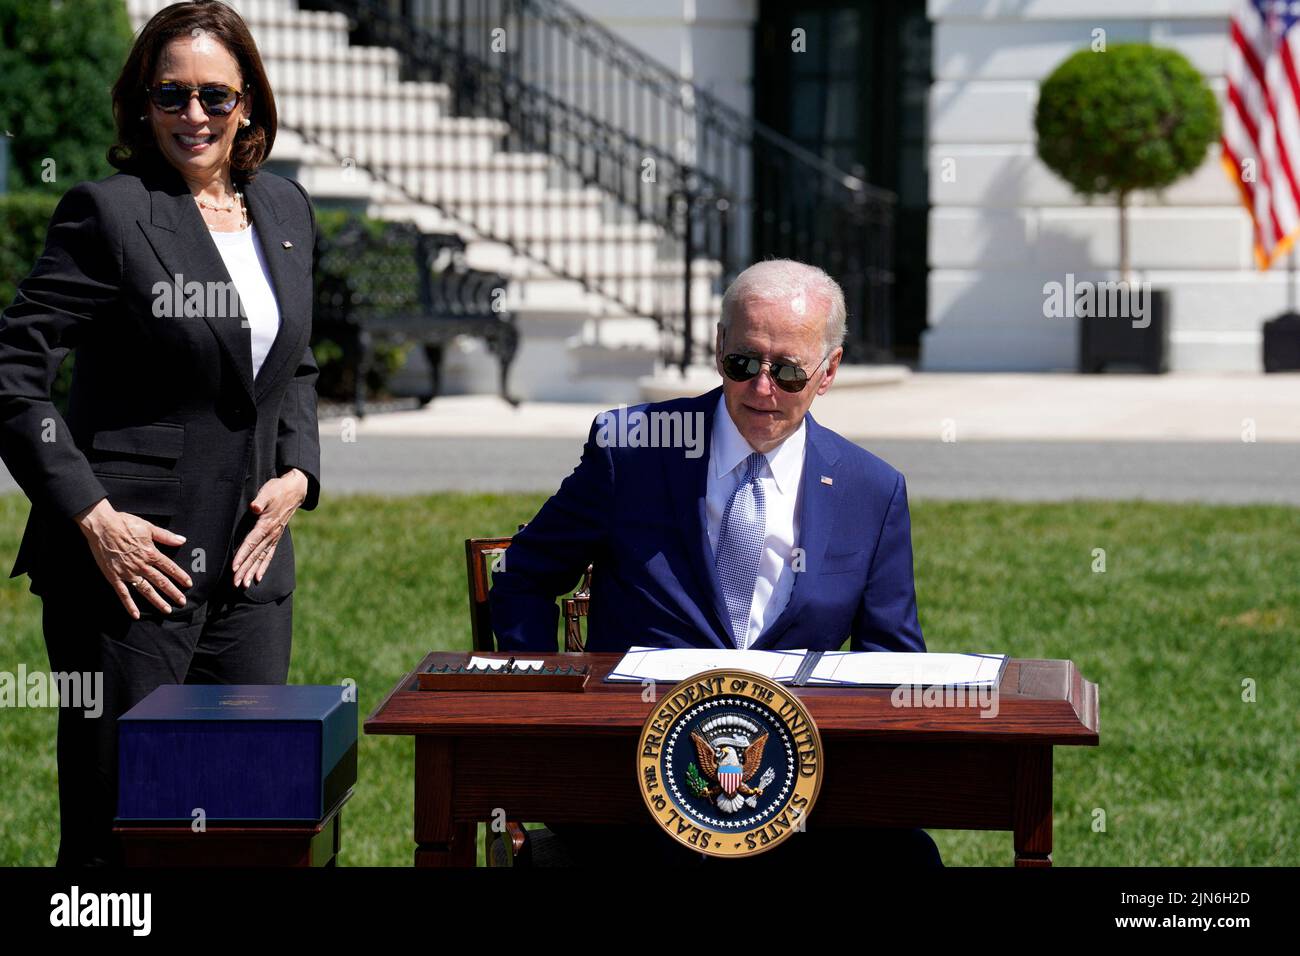 El presidente estadounidense Joe Biden junto al vicepresidente Kamala Harris se prepara para firmar la ley CHIPS and Science Act durante una ceremonia en el South Lawn de la Casa Blanca en Washington el 9 de agosto de 2022. Foto: Yuri Gripas/ABACAPRESS.COM Foto de stock